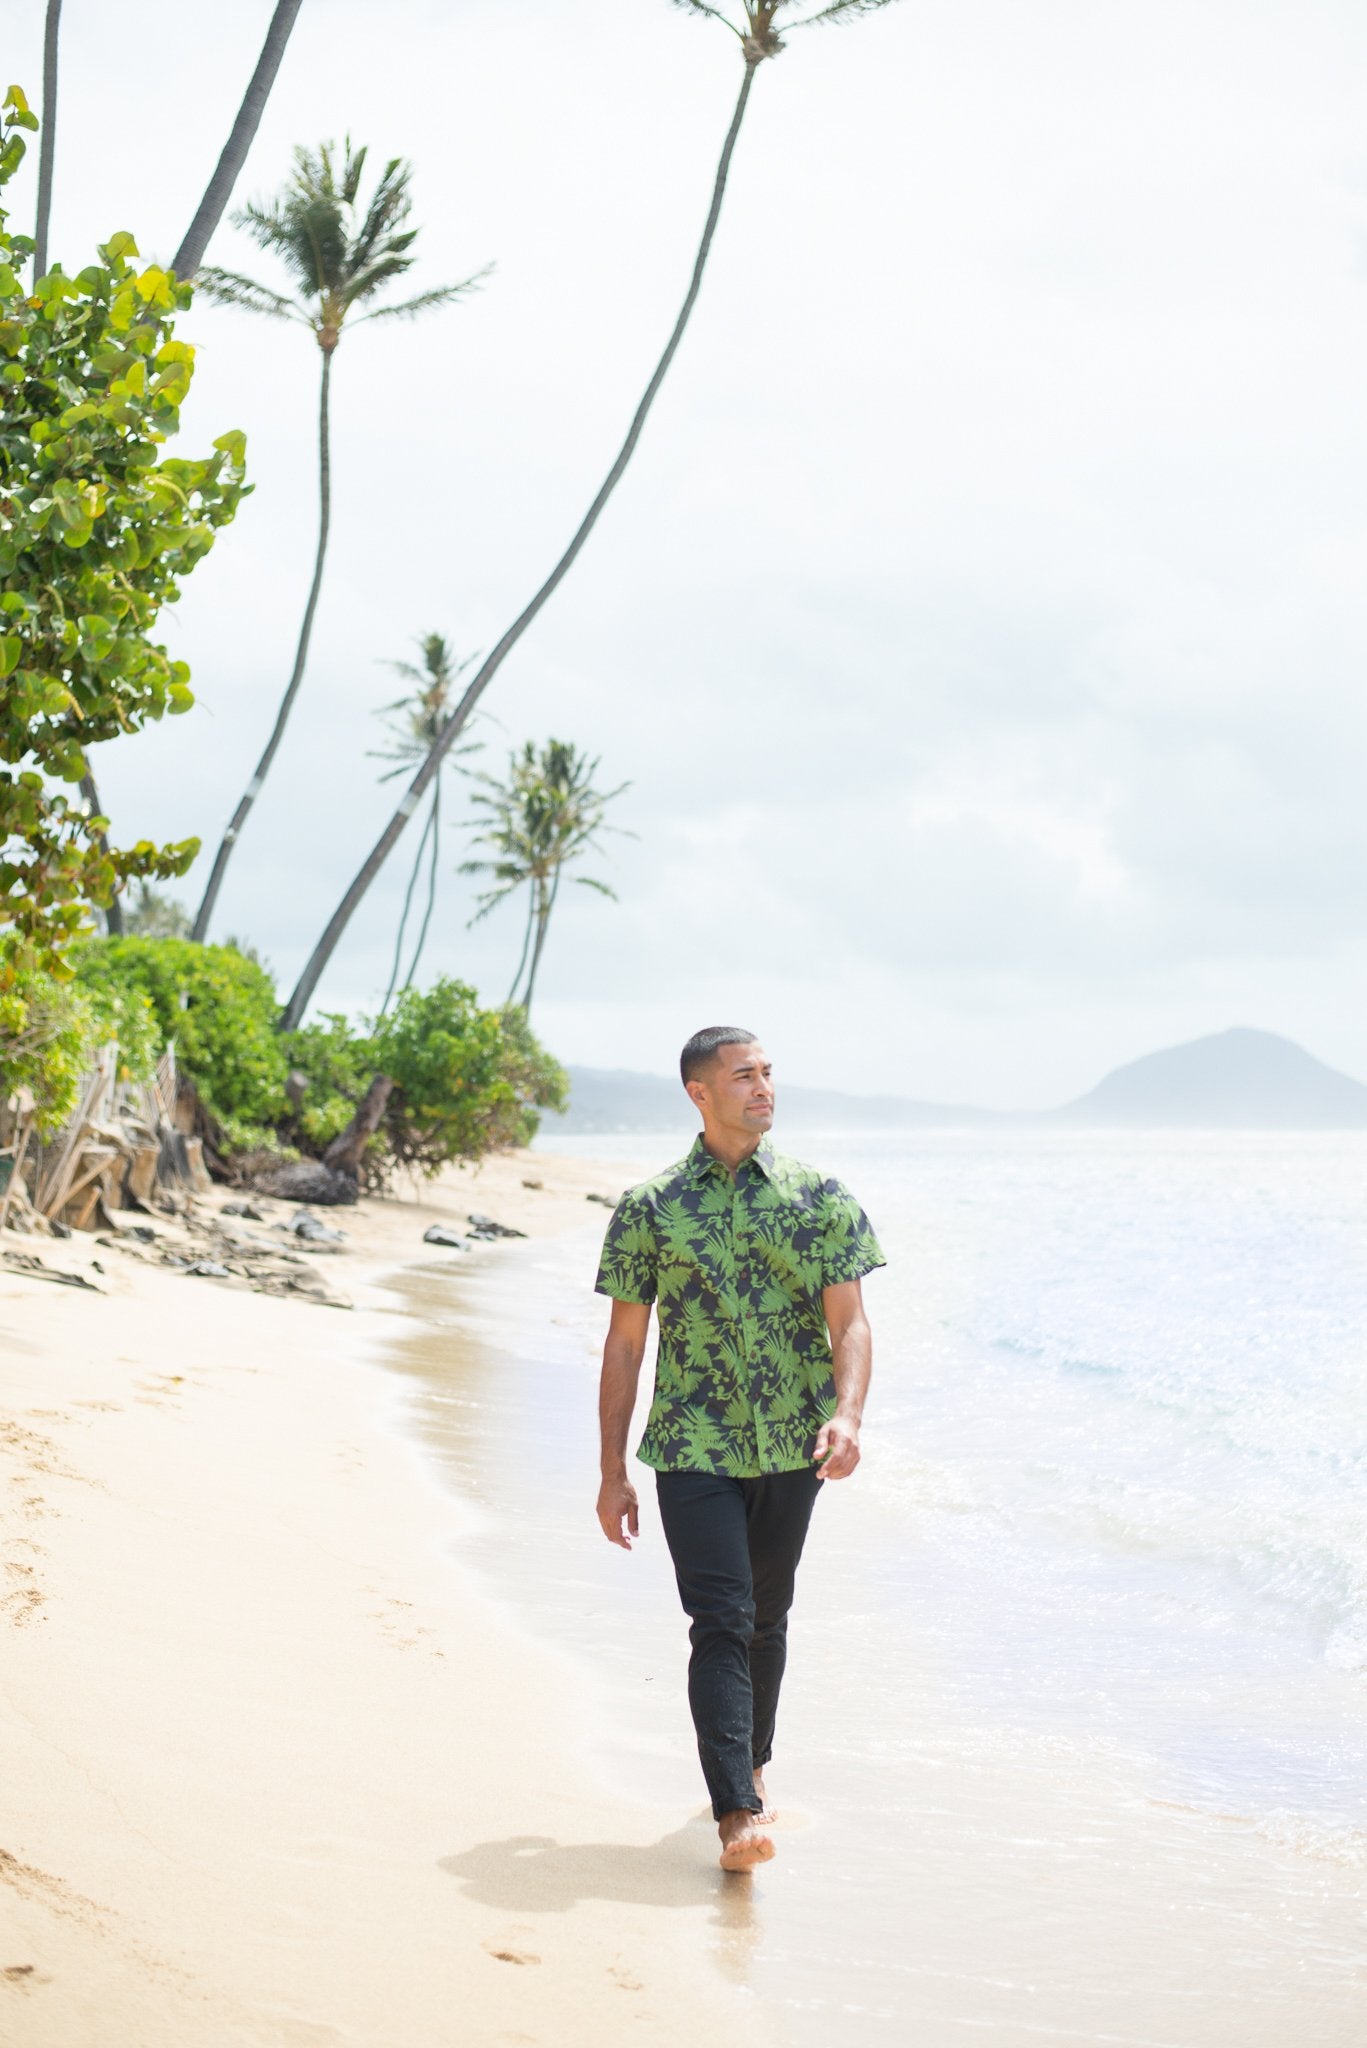 Pop-Up Mākeke - David Shepard Hawaii - Hāpuʻu Tree Fern Men's Aloha Shirt